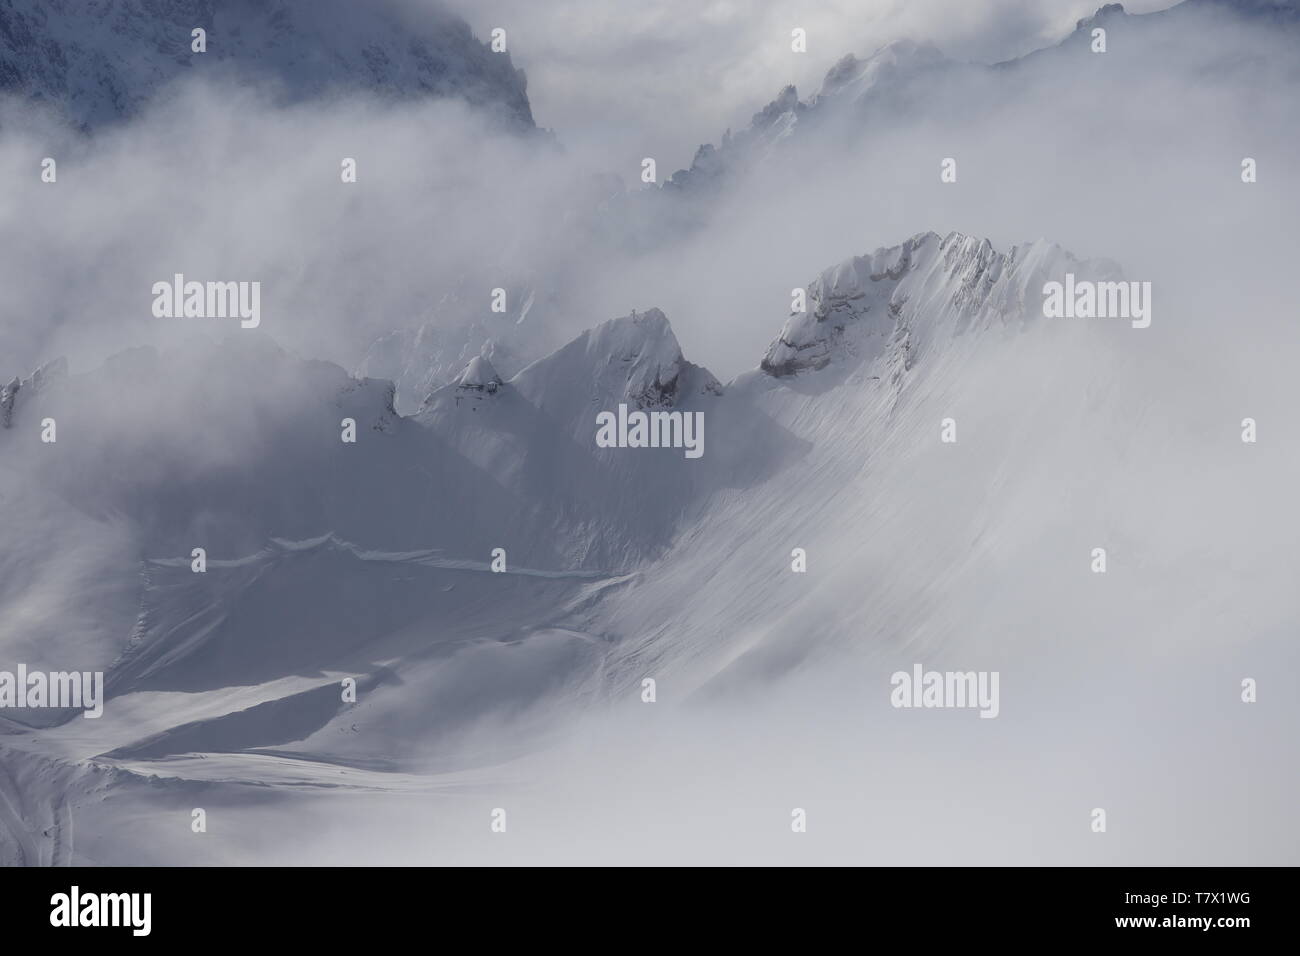 Zugspitze: Nur ein Berggrat konuriert die sonnenüberflutet weiße Pracht. Licht und Schatten hauchen dem weißen Pomp Leben ein.. Stock Photo